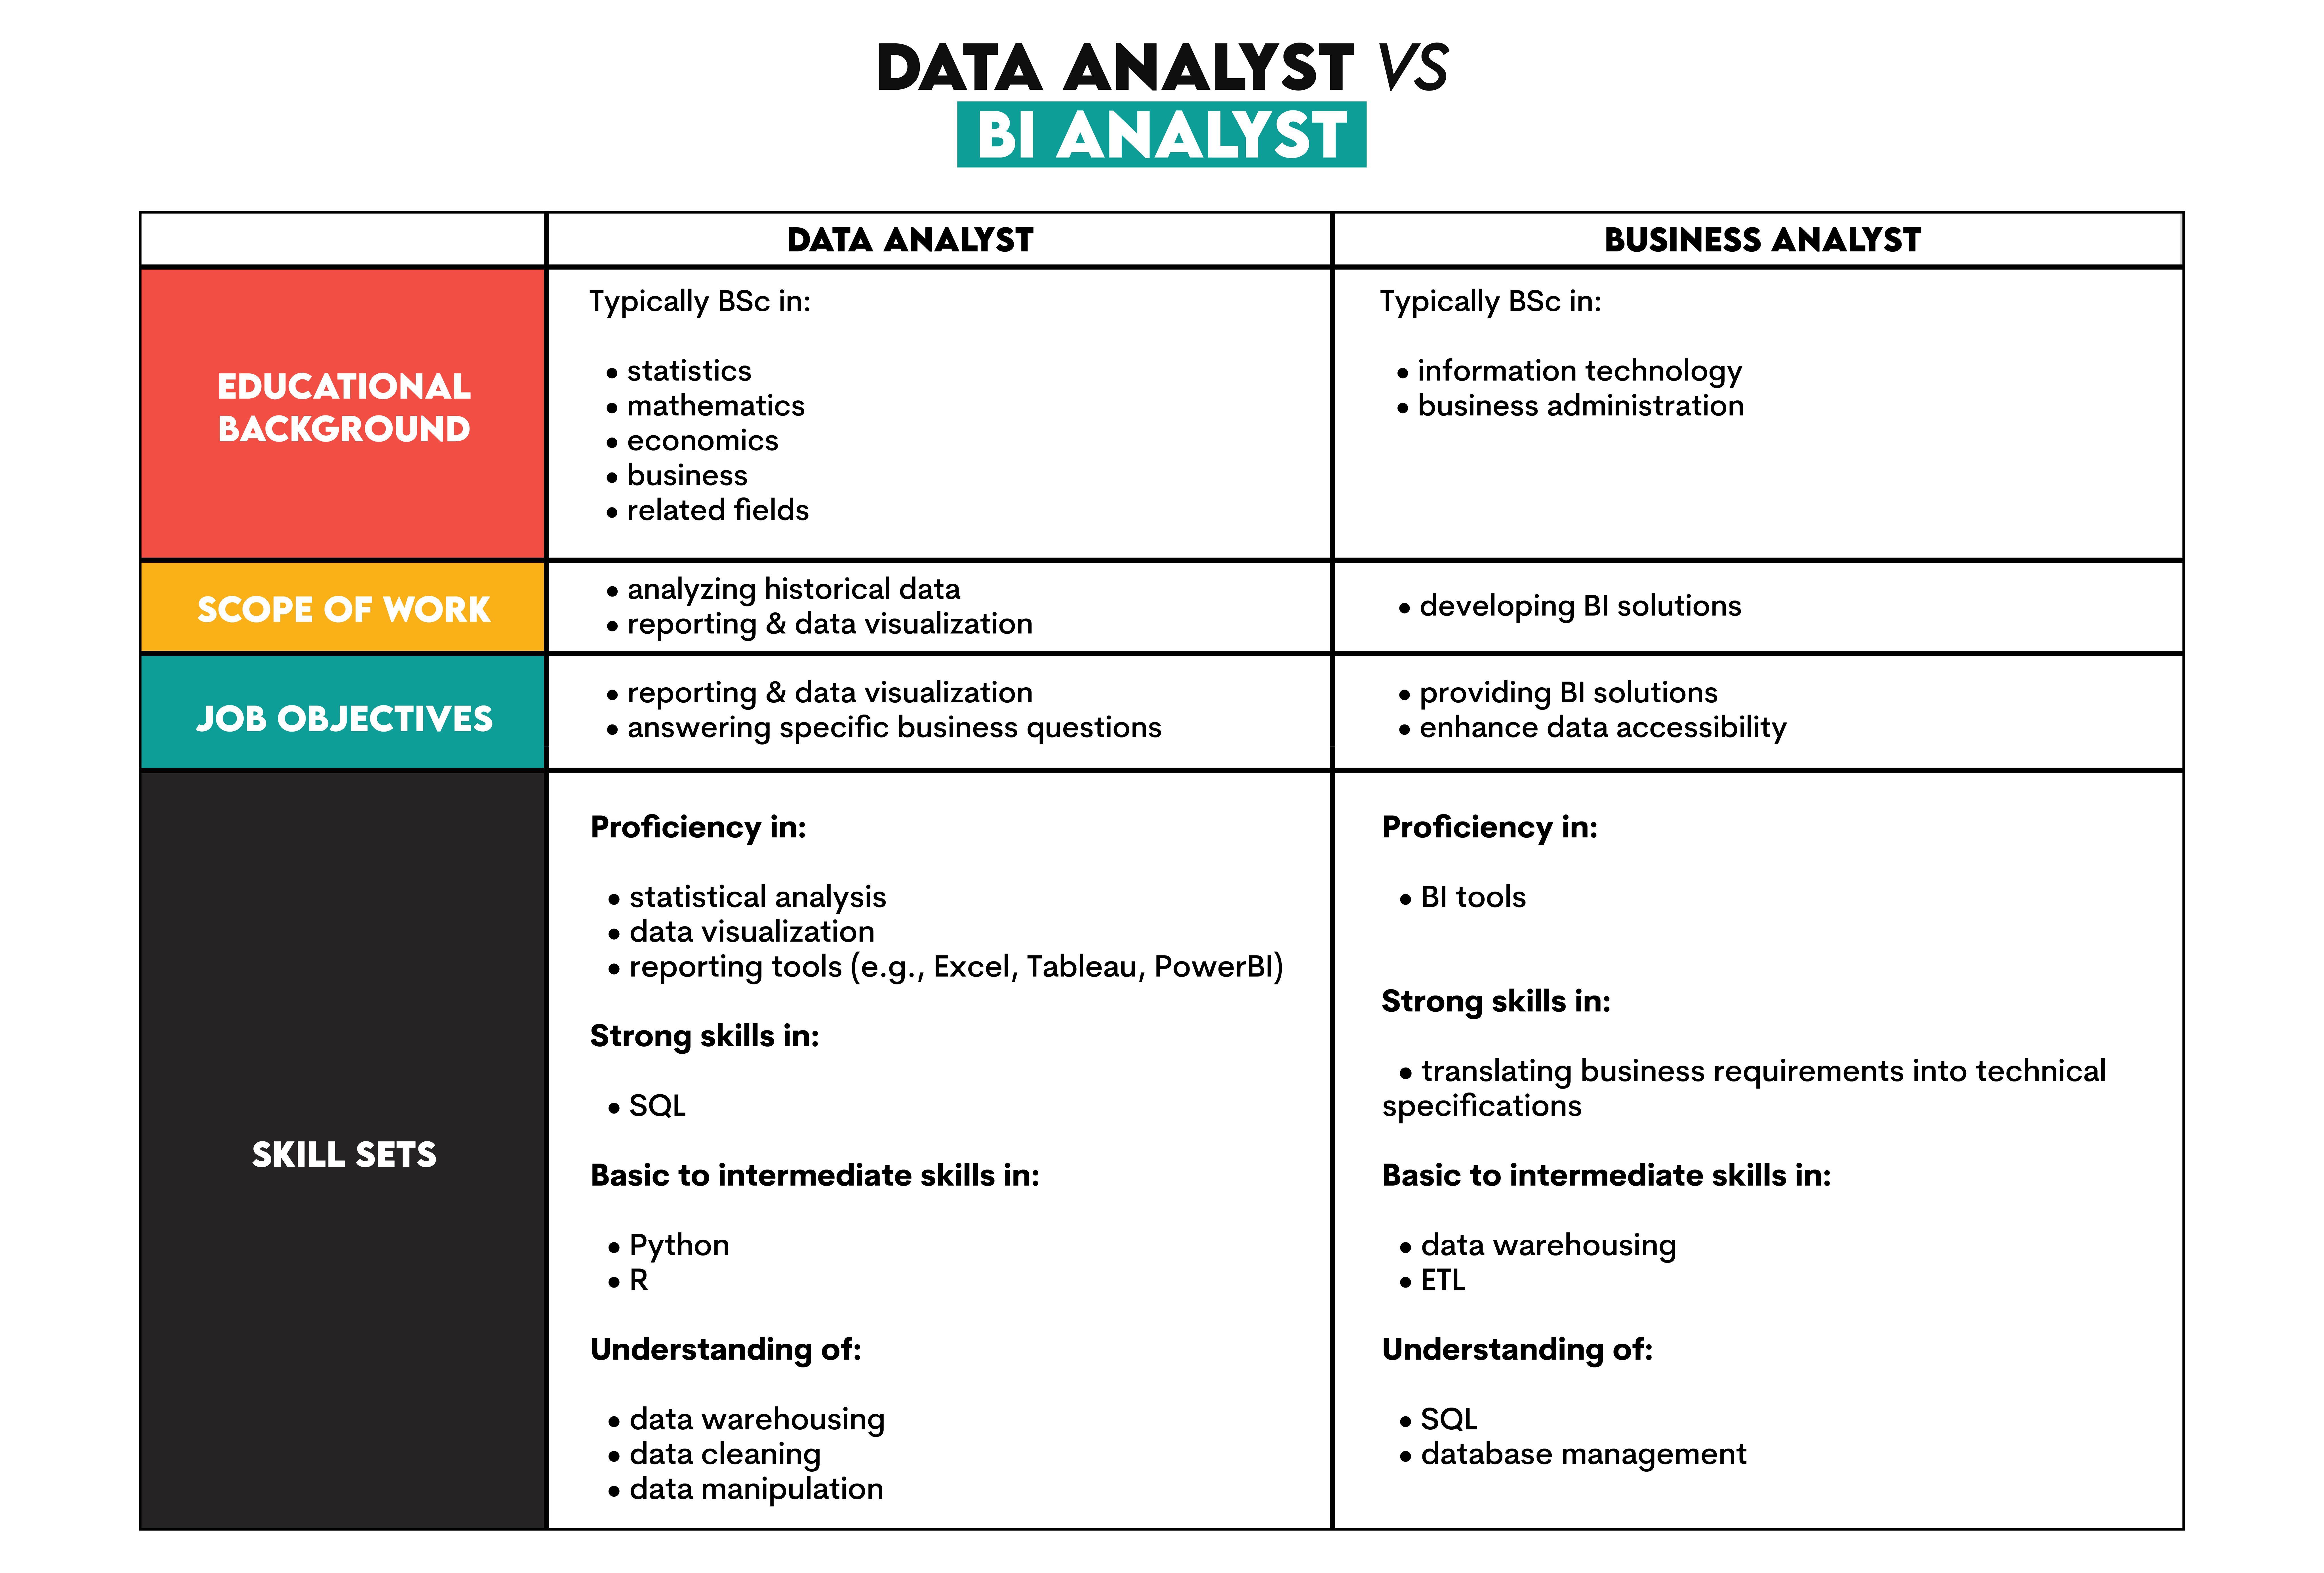 Data Analyst vs BI Analyst